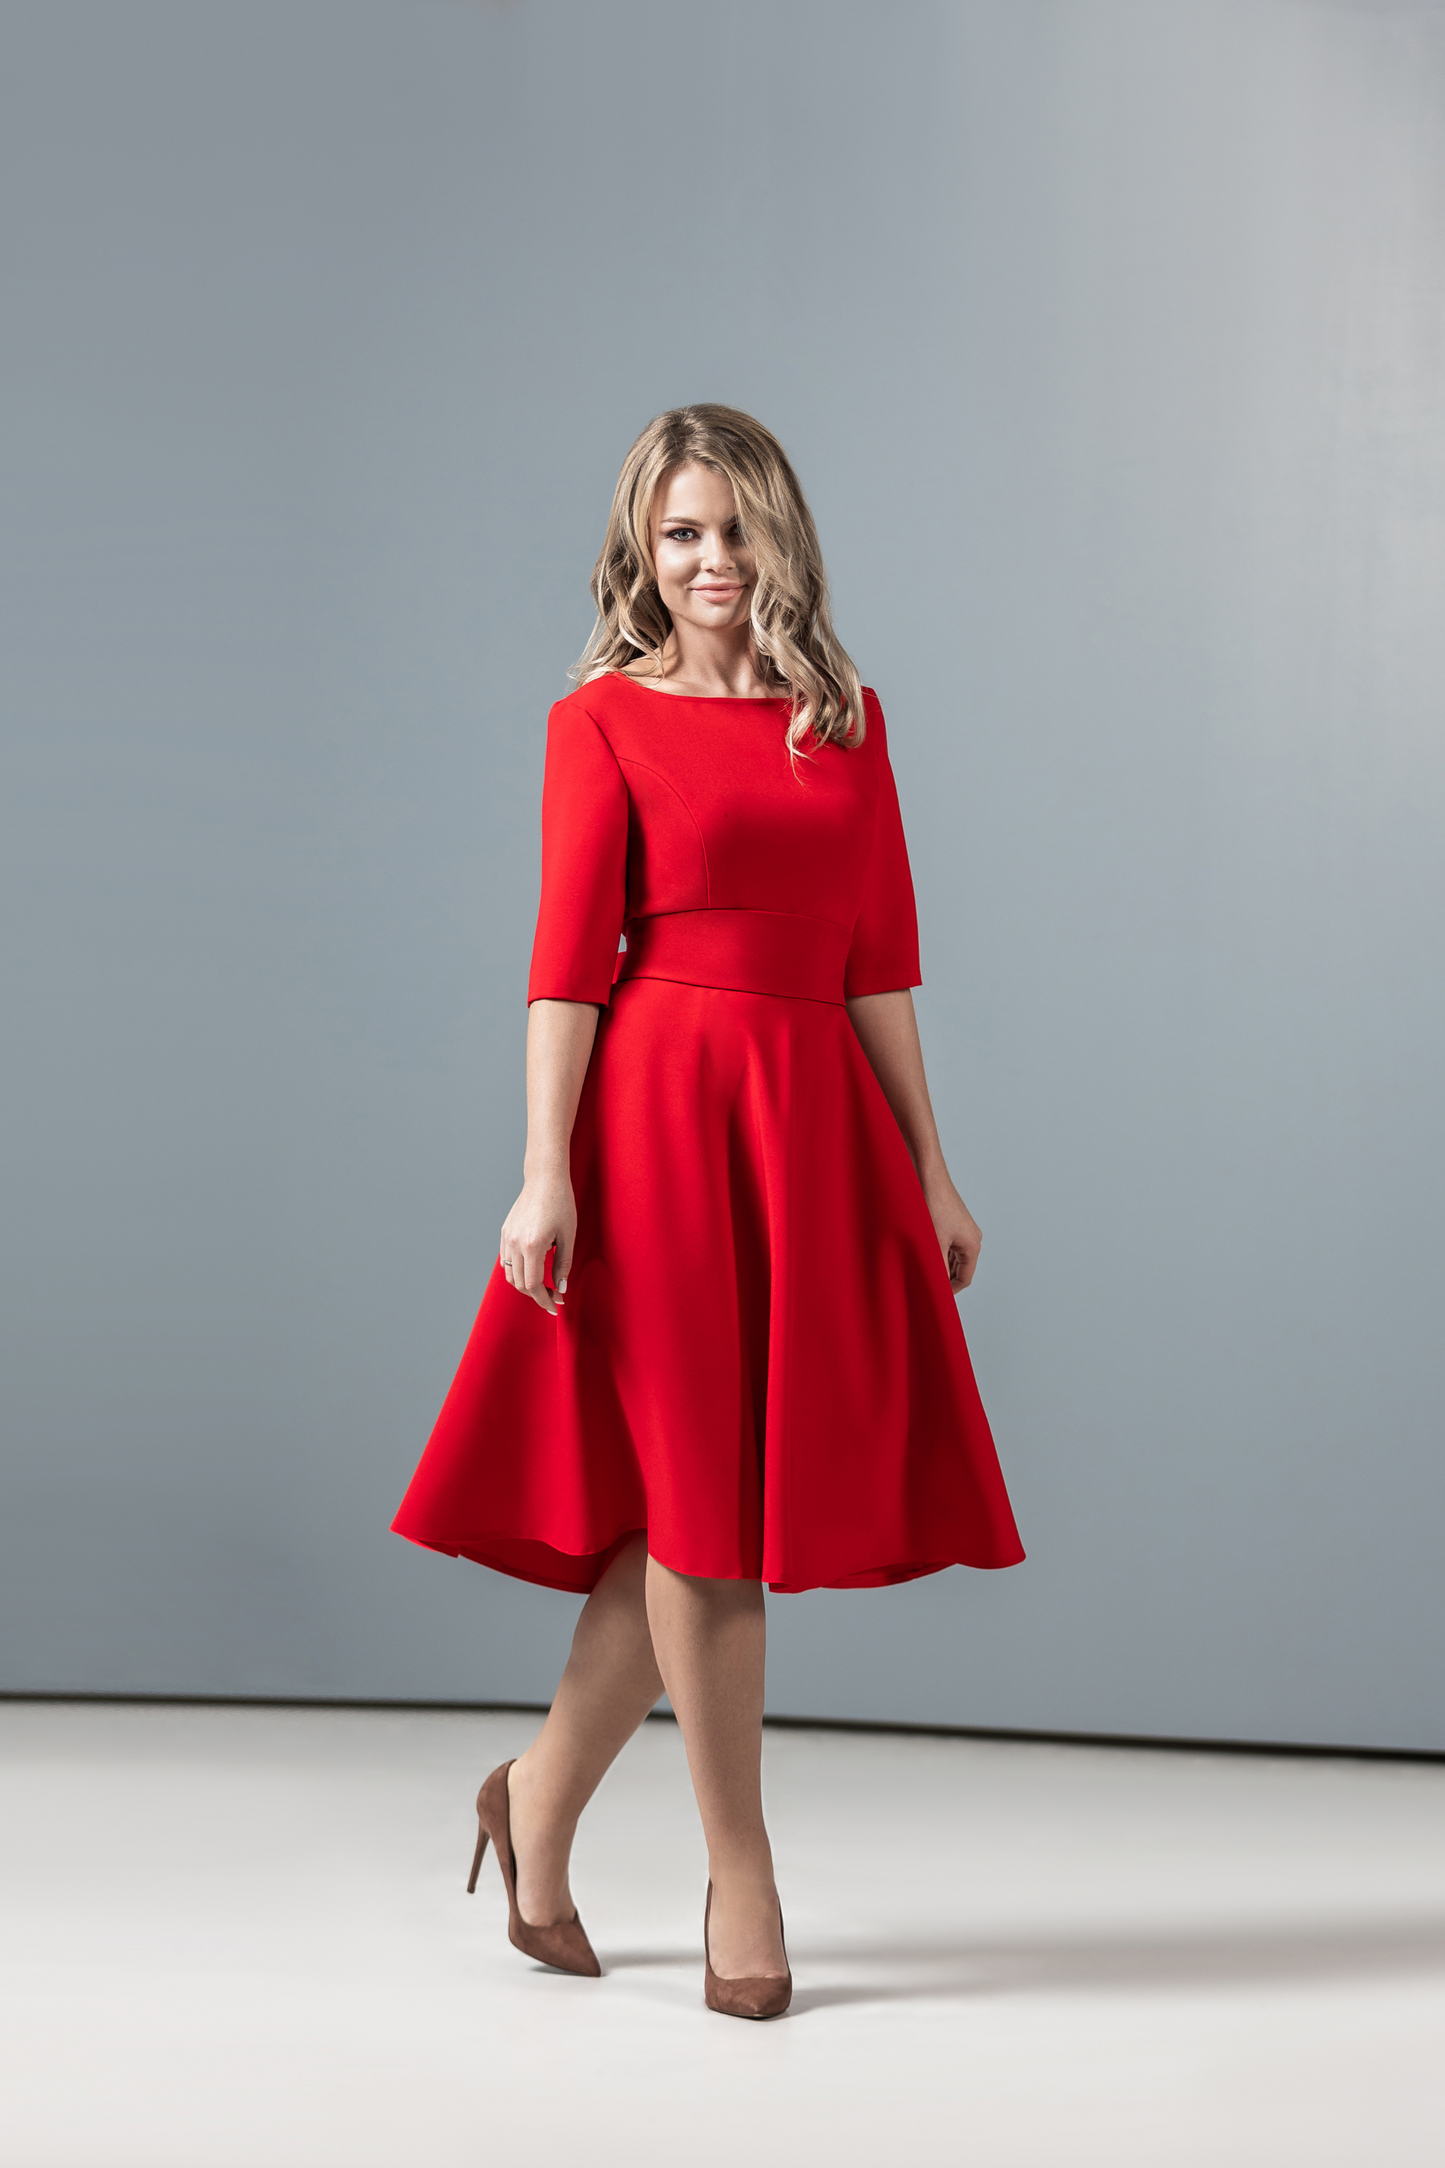 Rotes klassisches Kleid mit Tellerrock